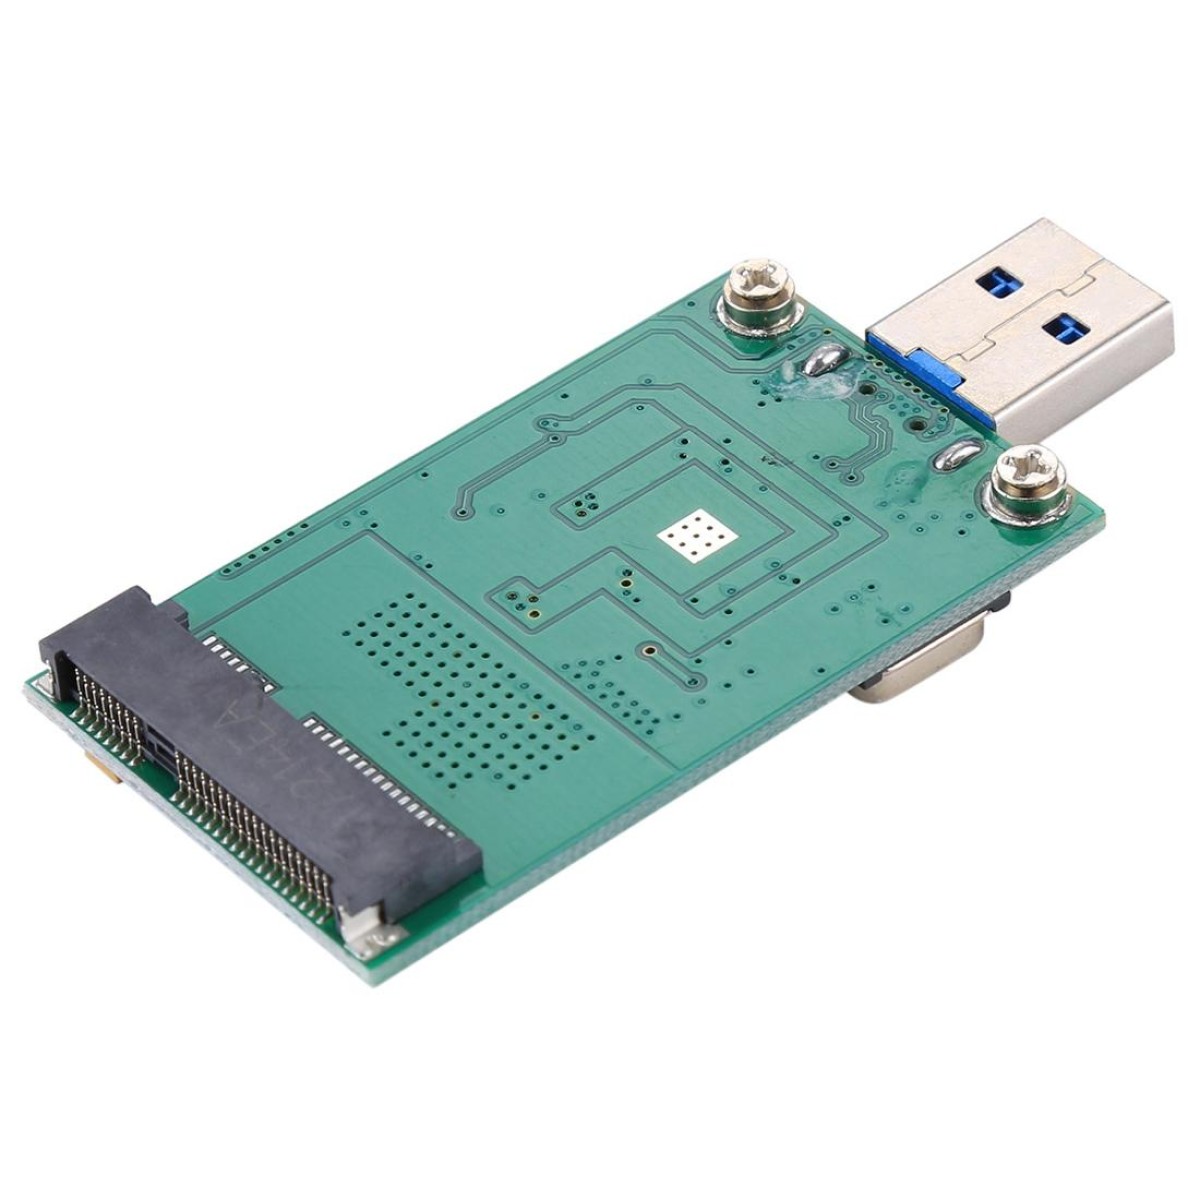 mSATA SSD to USB 3.0 Converter Adapter Card Module Board Hard Disk Drive